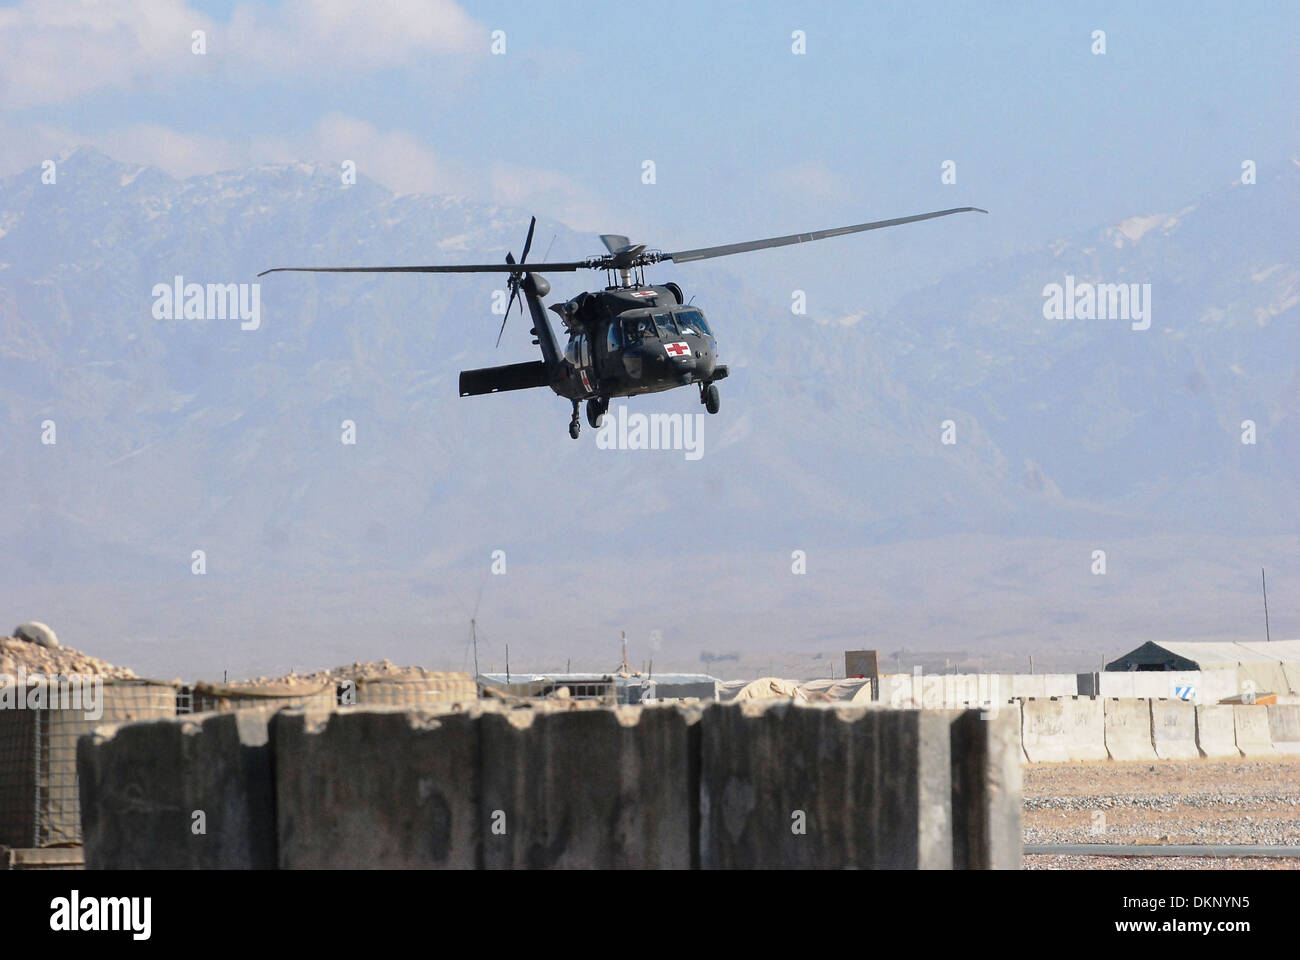 Un HH-60M helicóptero de evacuación médica de la 10ª Brigada de Aviación de Combate hace que su enfoque en el armado de avance y punto de reabastecimiento de combustible a base de operaciones avanzada Shank, Afganistán, después de completar una misión de evacuación médica el 4 de diciembre de 2013. Foto de stock